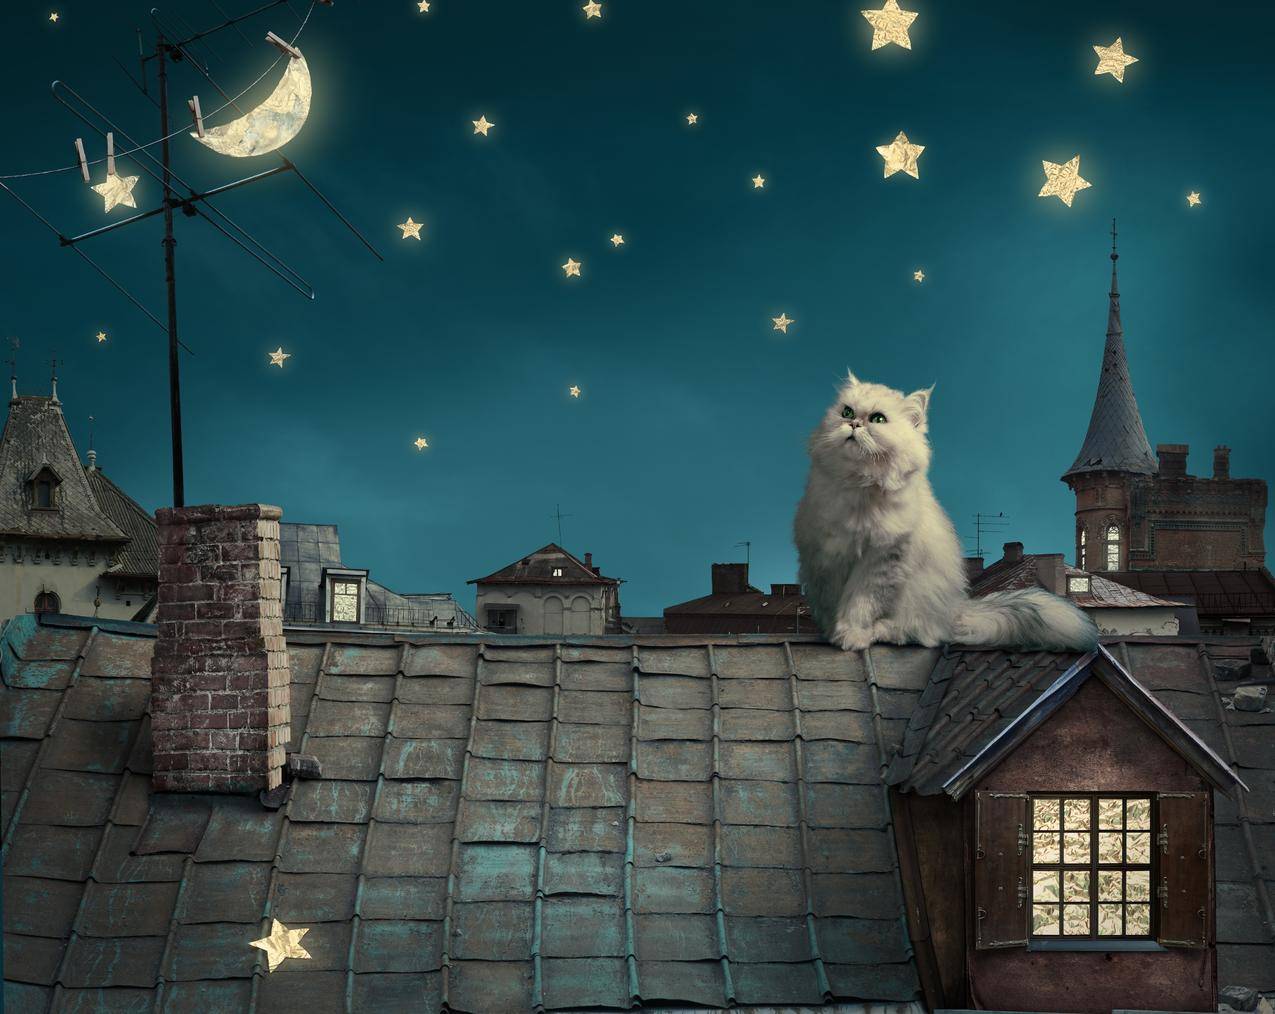 波斯白猫,小猫,童话,幻想,晚上屋顶,房子,天空图片